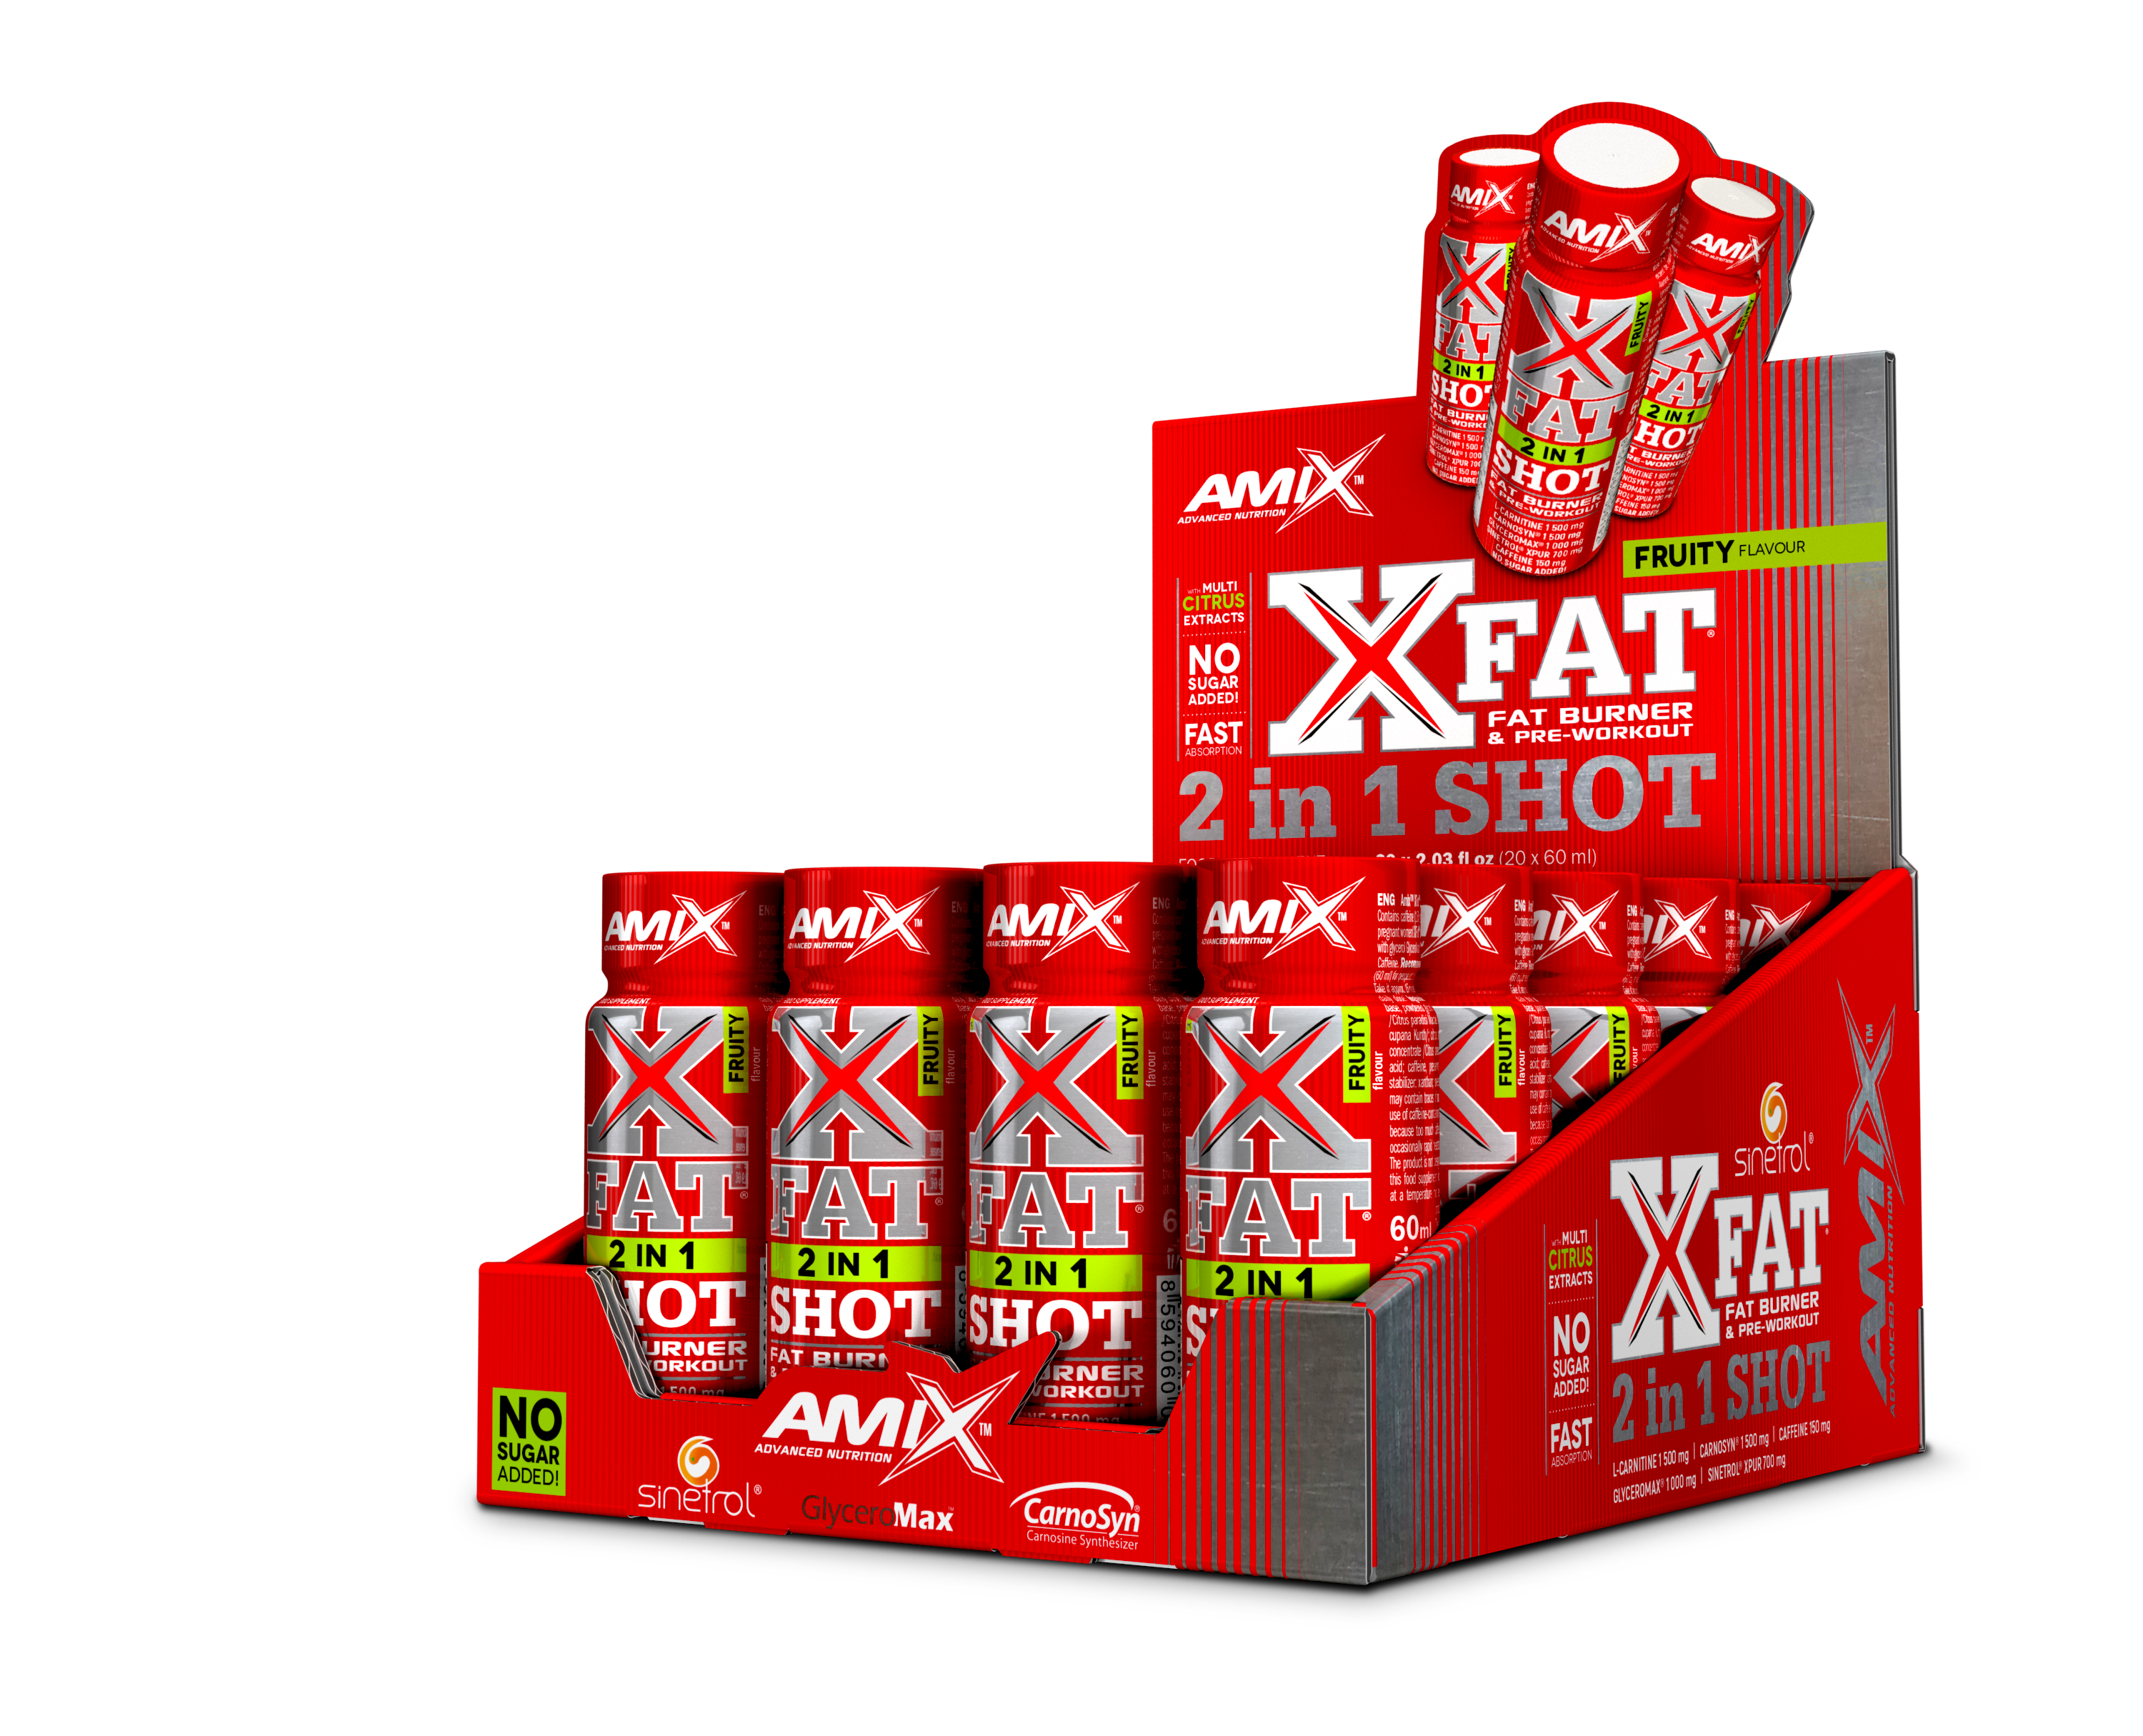 XFAT 2 in 1 SHOT